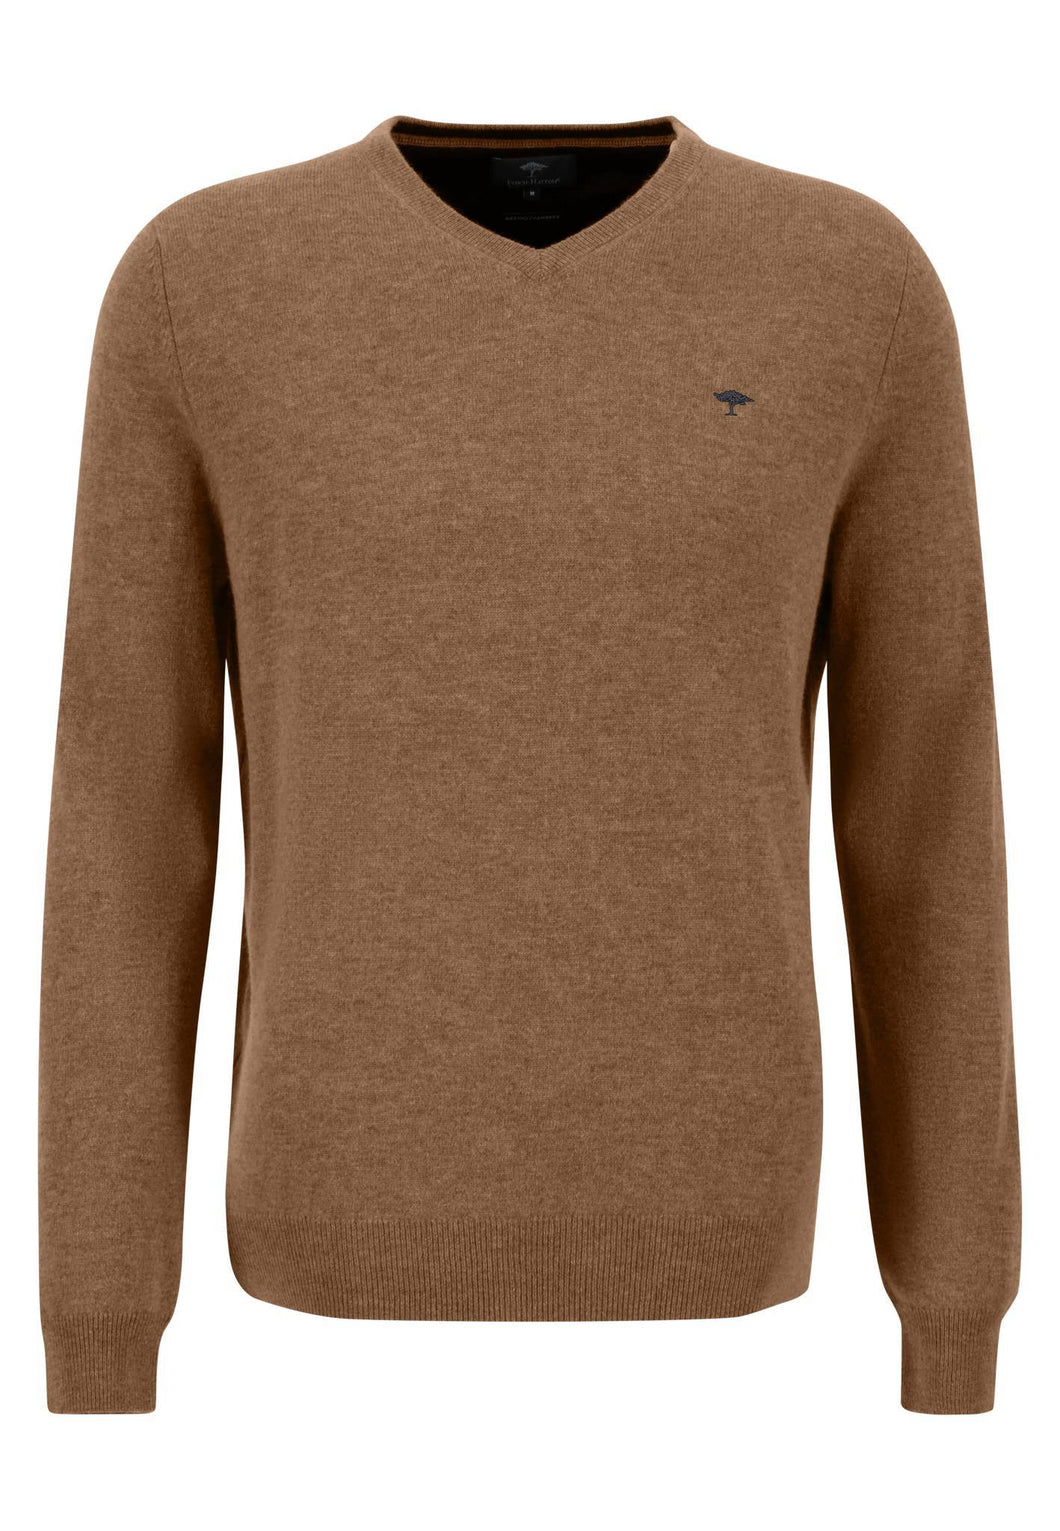 New Fynch Hatton Walnut Brown Merino Cashmere Sweater